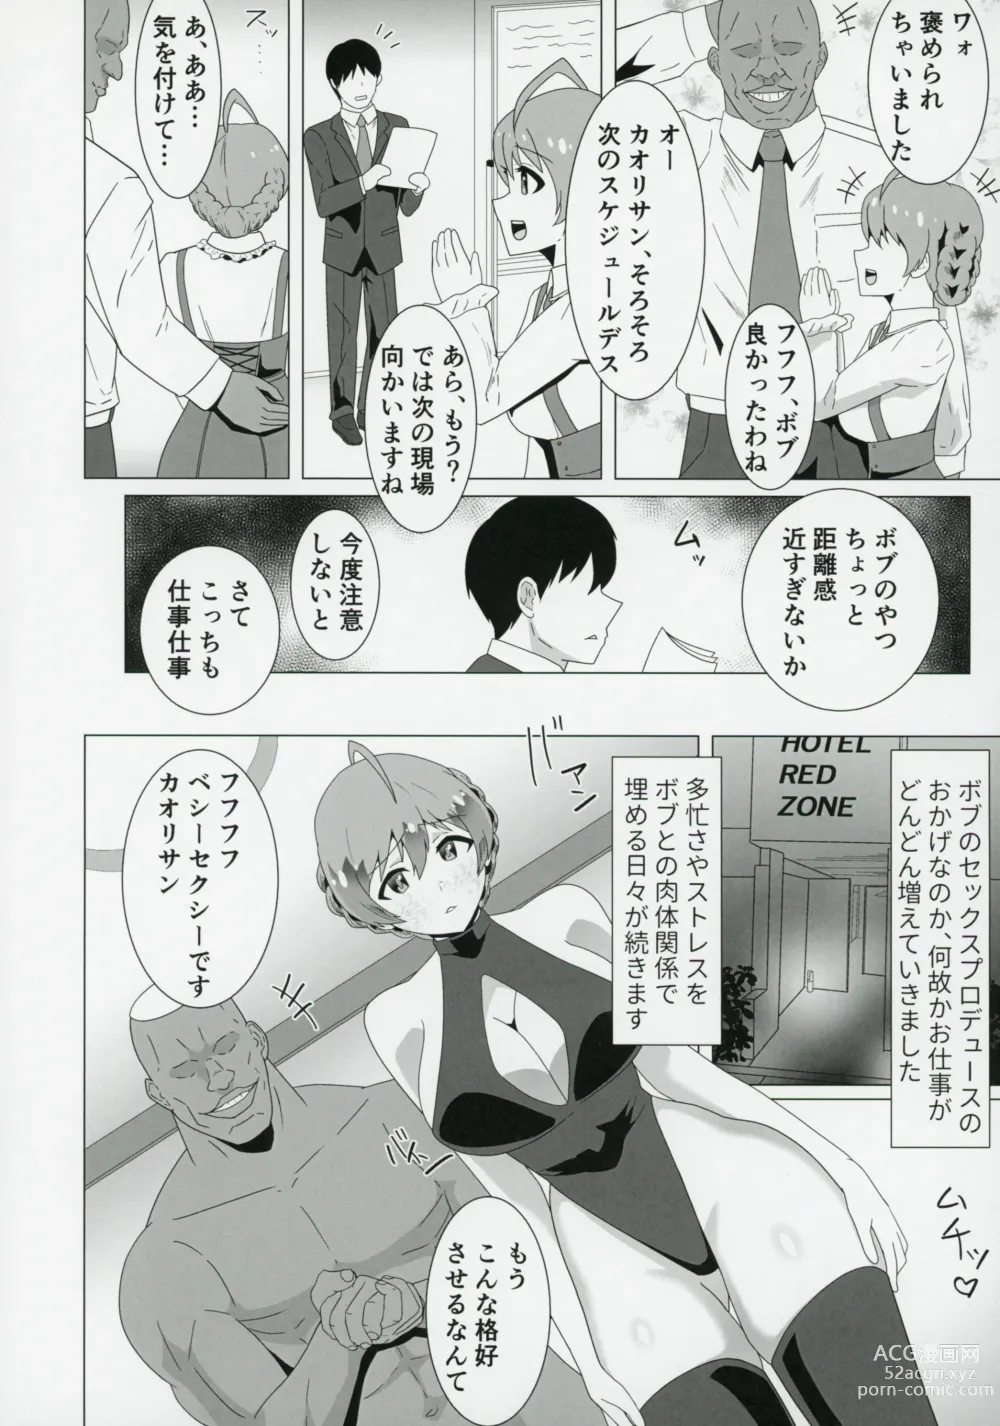 Page 15 of doujinshi Kaori,Kokujin Macho ni Kairakuochi,Netorare Sex de Kizamareta BBC.